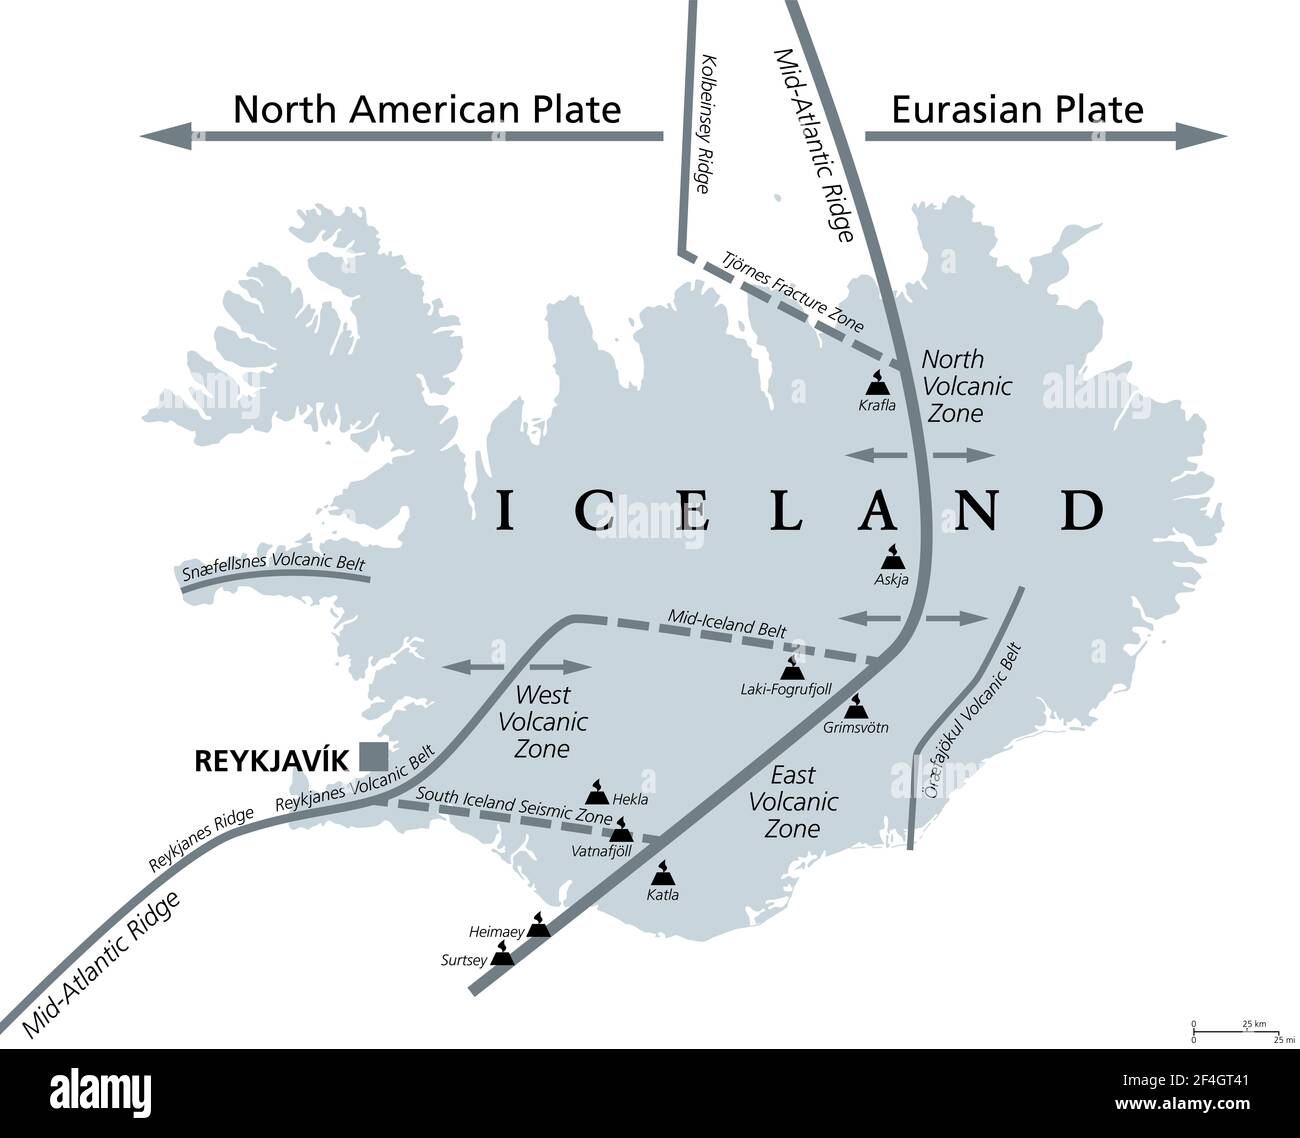 Geologie von Island, graue politische Landkarte. Island liegt an der divergierenden Grenze zwischen eurasischer Platte und nordamerikanischer Platte. Stockfoto